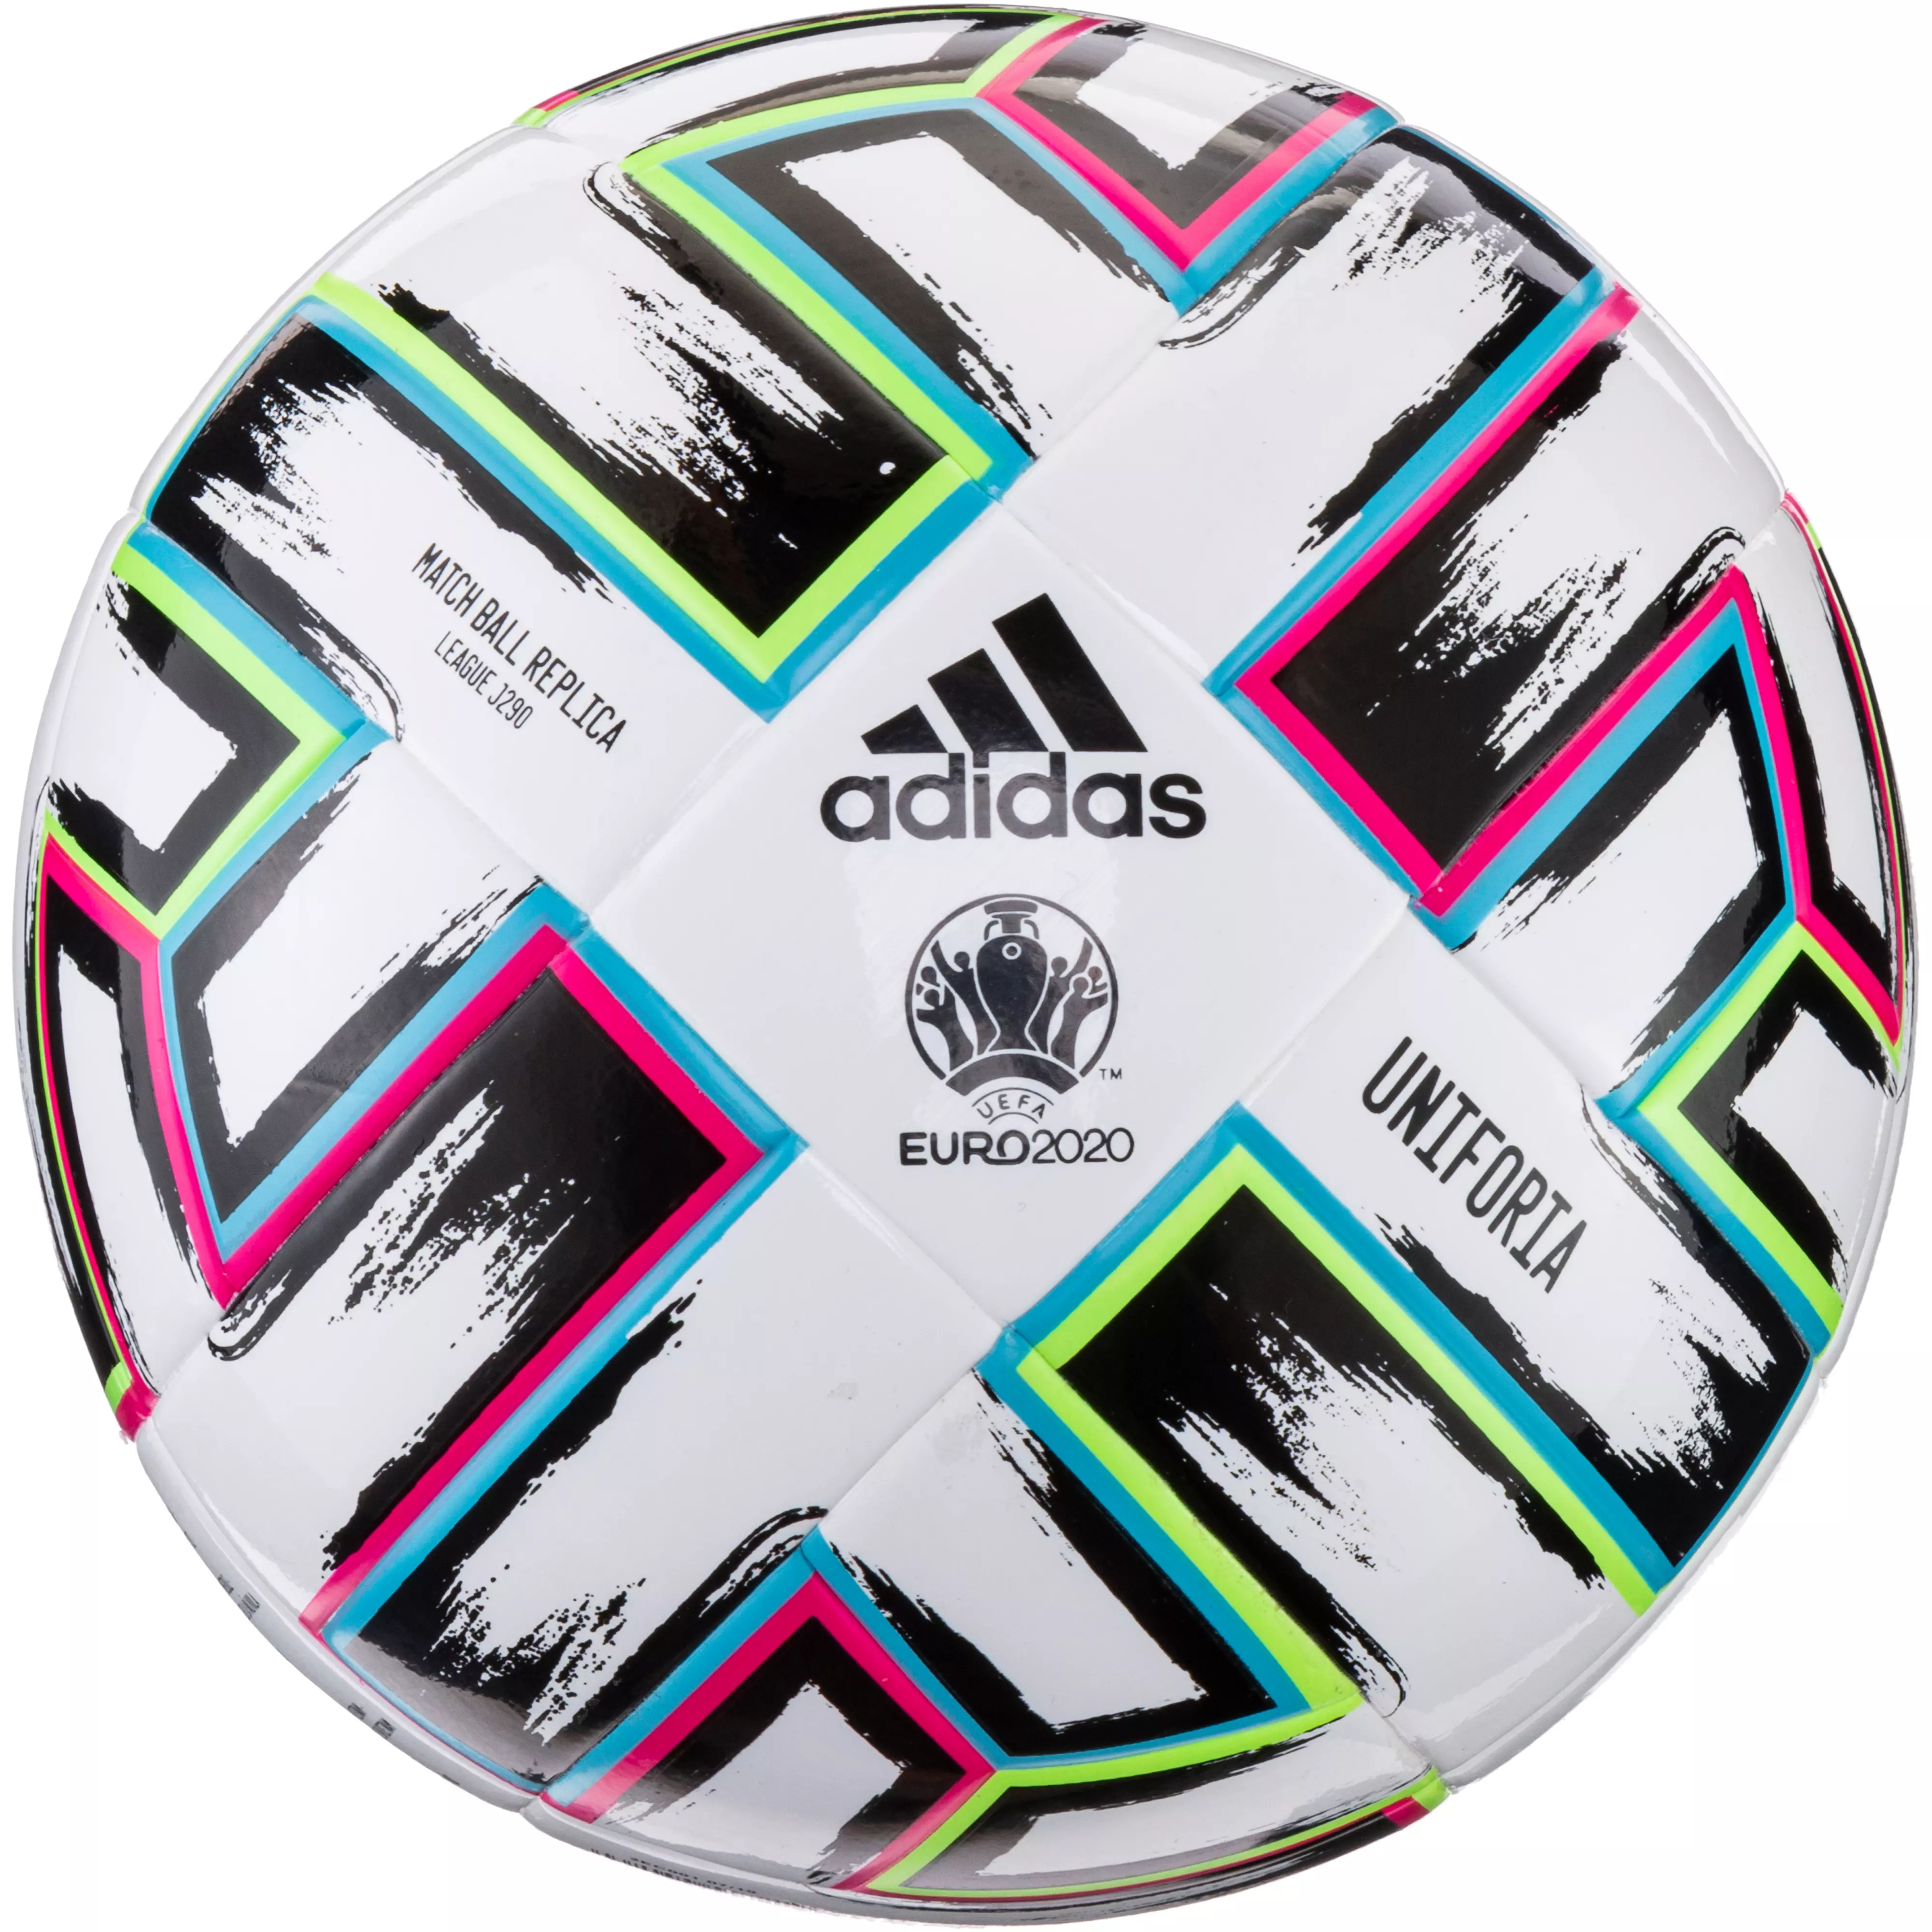 Adidas Em 2021 Unifo League J290 Fussball White Black Signal Green Bright Cyan Im Online Shop Von Sportscheck Kaufen